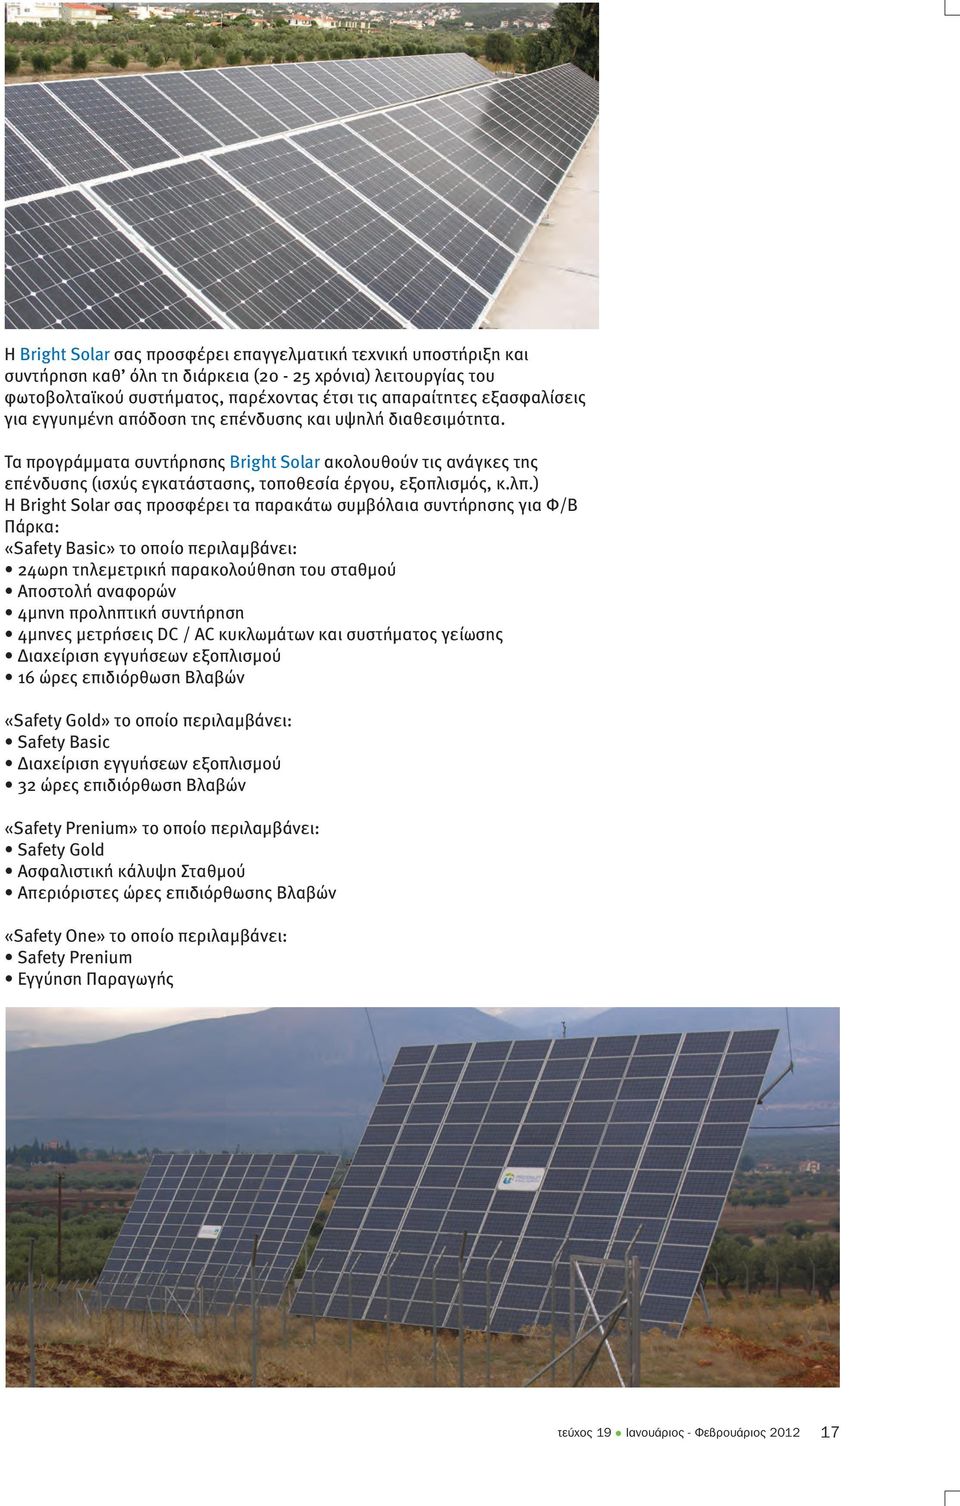 ) Η Bright Solar σας προσφέρει τα παρακάτω συµβόλαια συντήρησης για Φ/Β Πάρκα: «Safety Basic» το οποίο περιλαµβάνει: 24ωρη τηλεµετρική παρακολούθηση του σταθµού Αποστολή αναφορών 4µηνη προληπτική